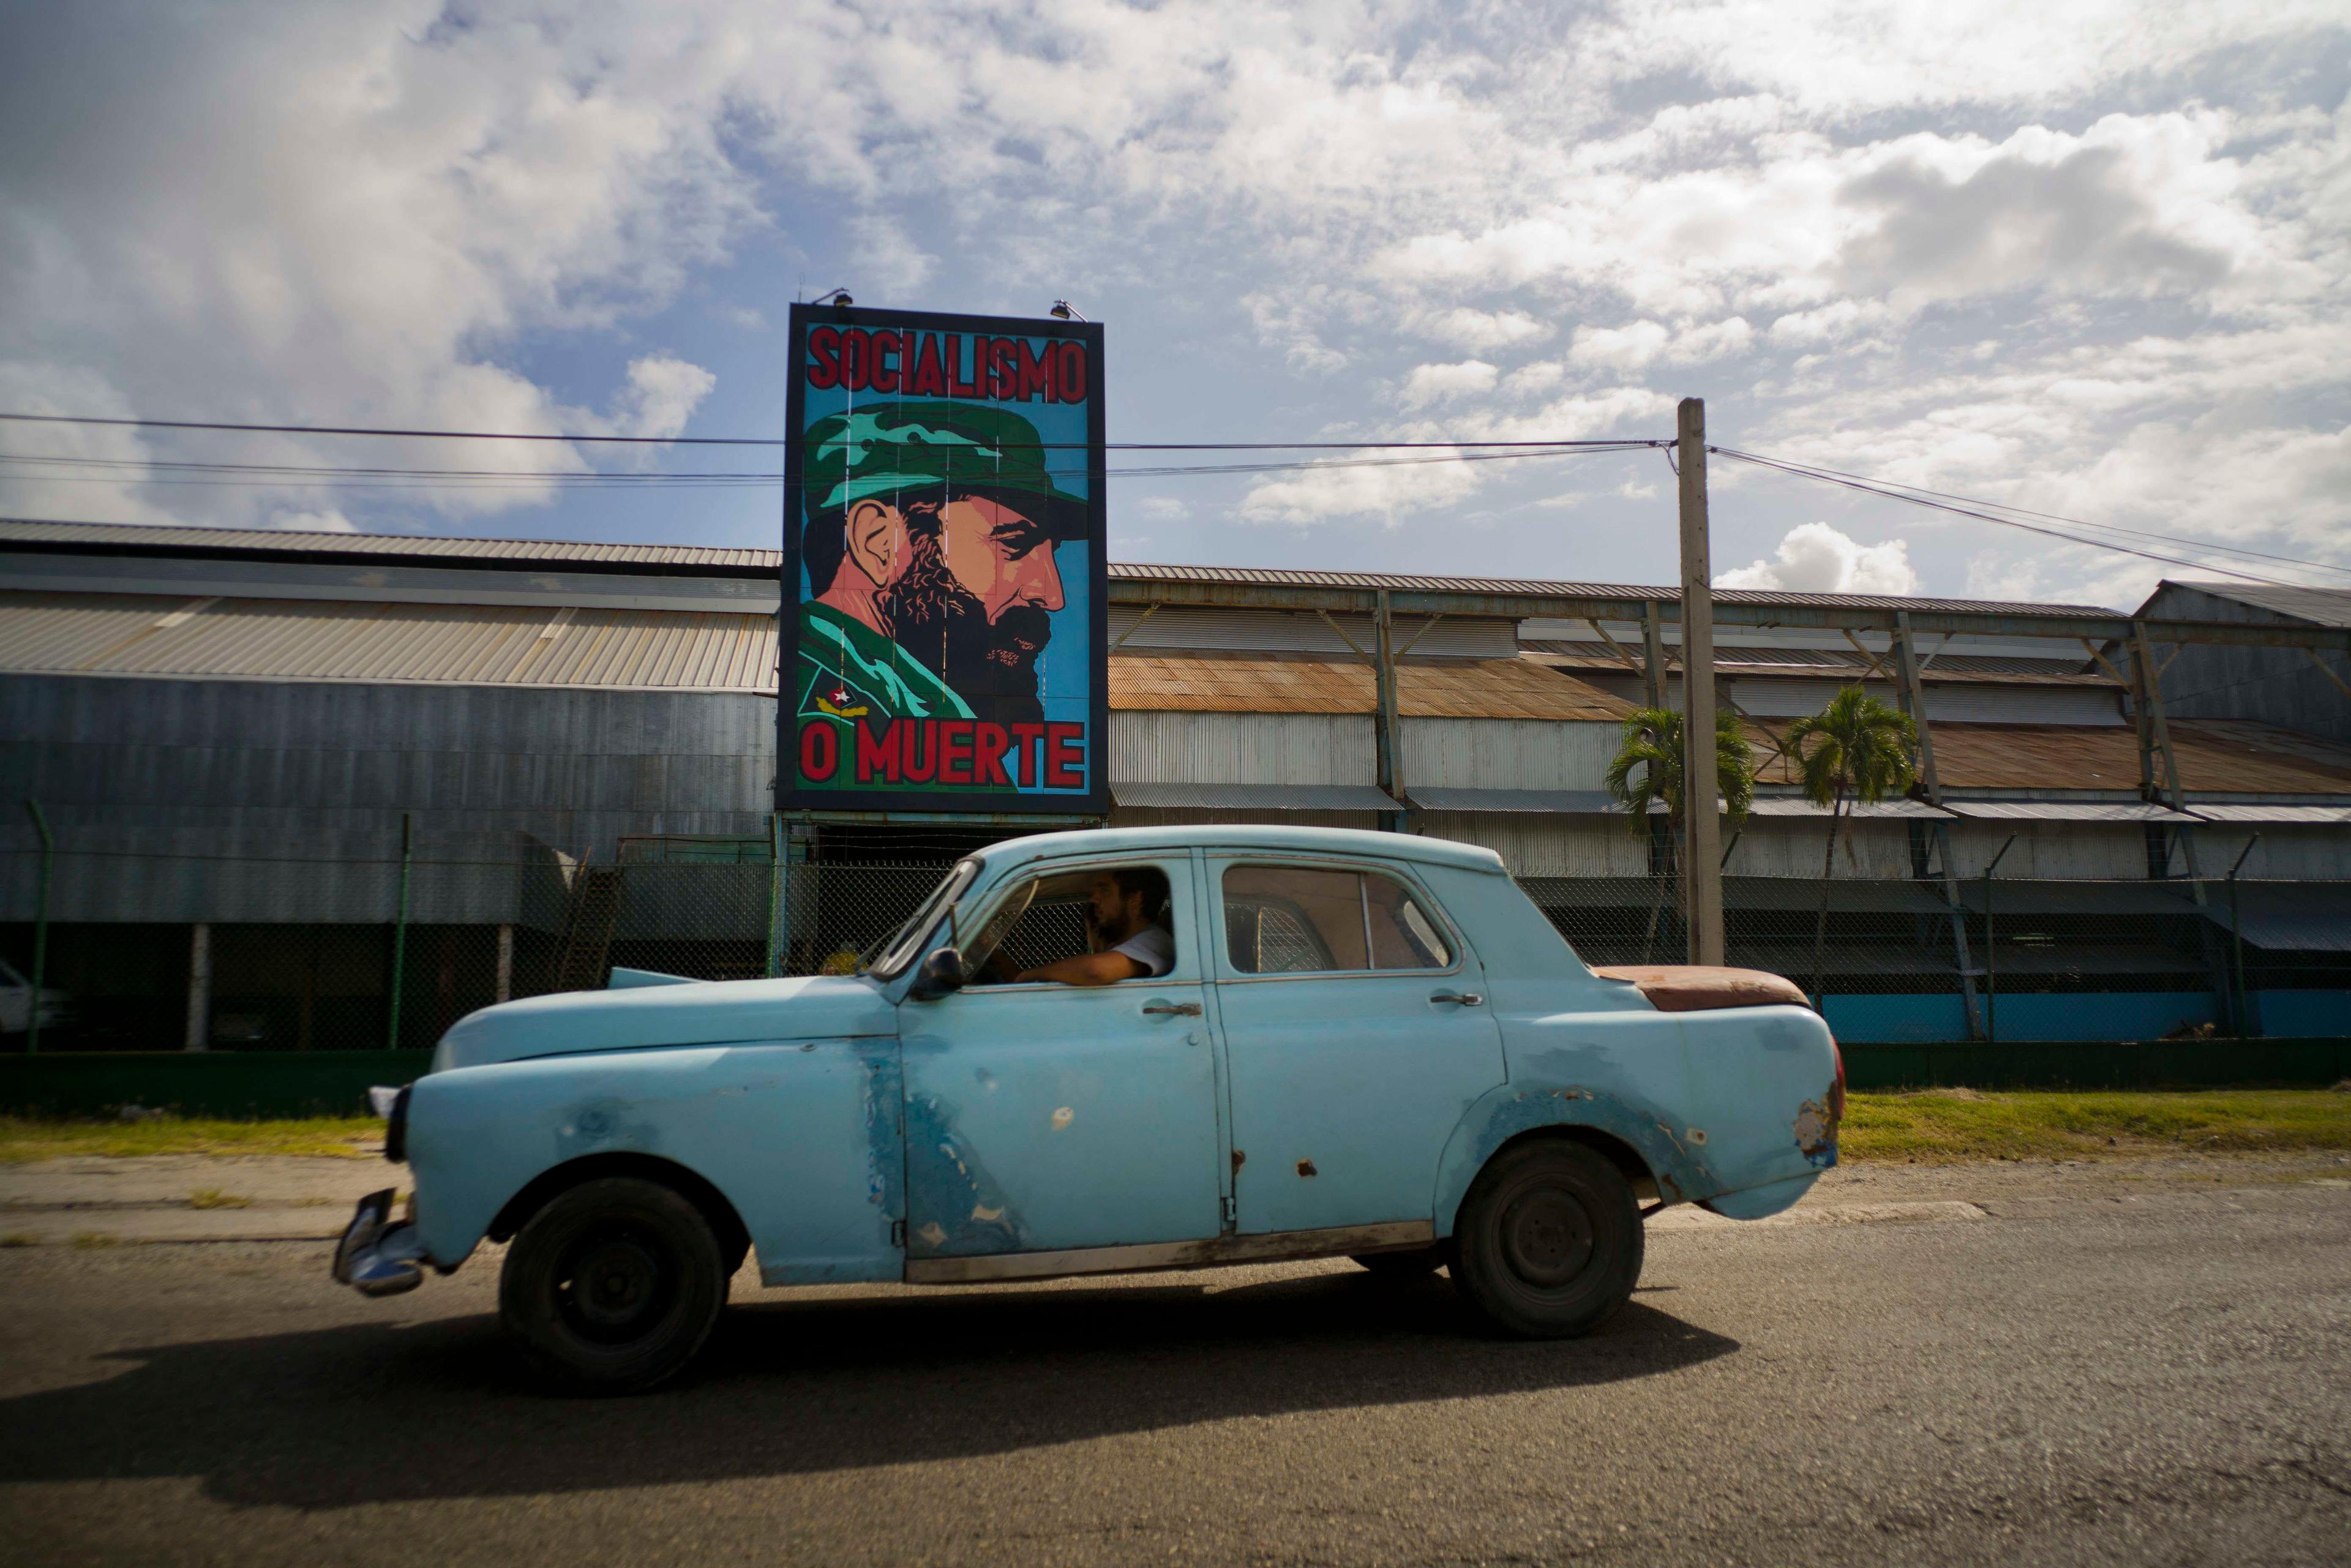  Un automóvil pasa por una fábrica con una imagen de Fidel Castro que dice Socialismo o muerte, en La Habana. (Foto AP/Ramón Espinosa) Archivo. 